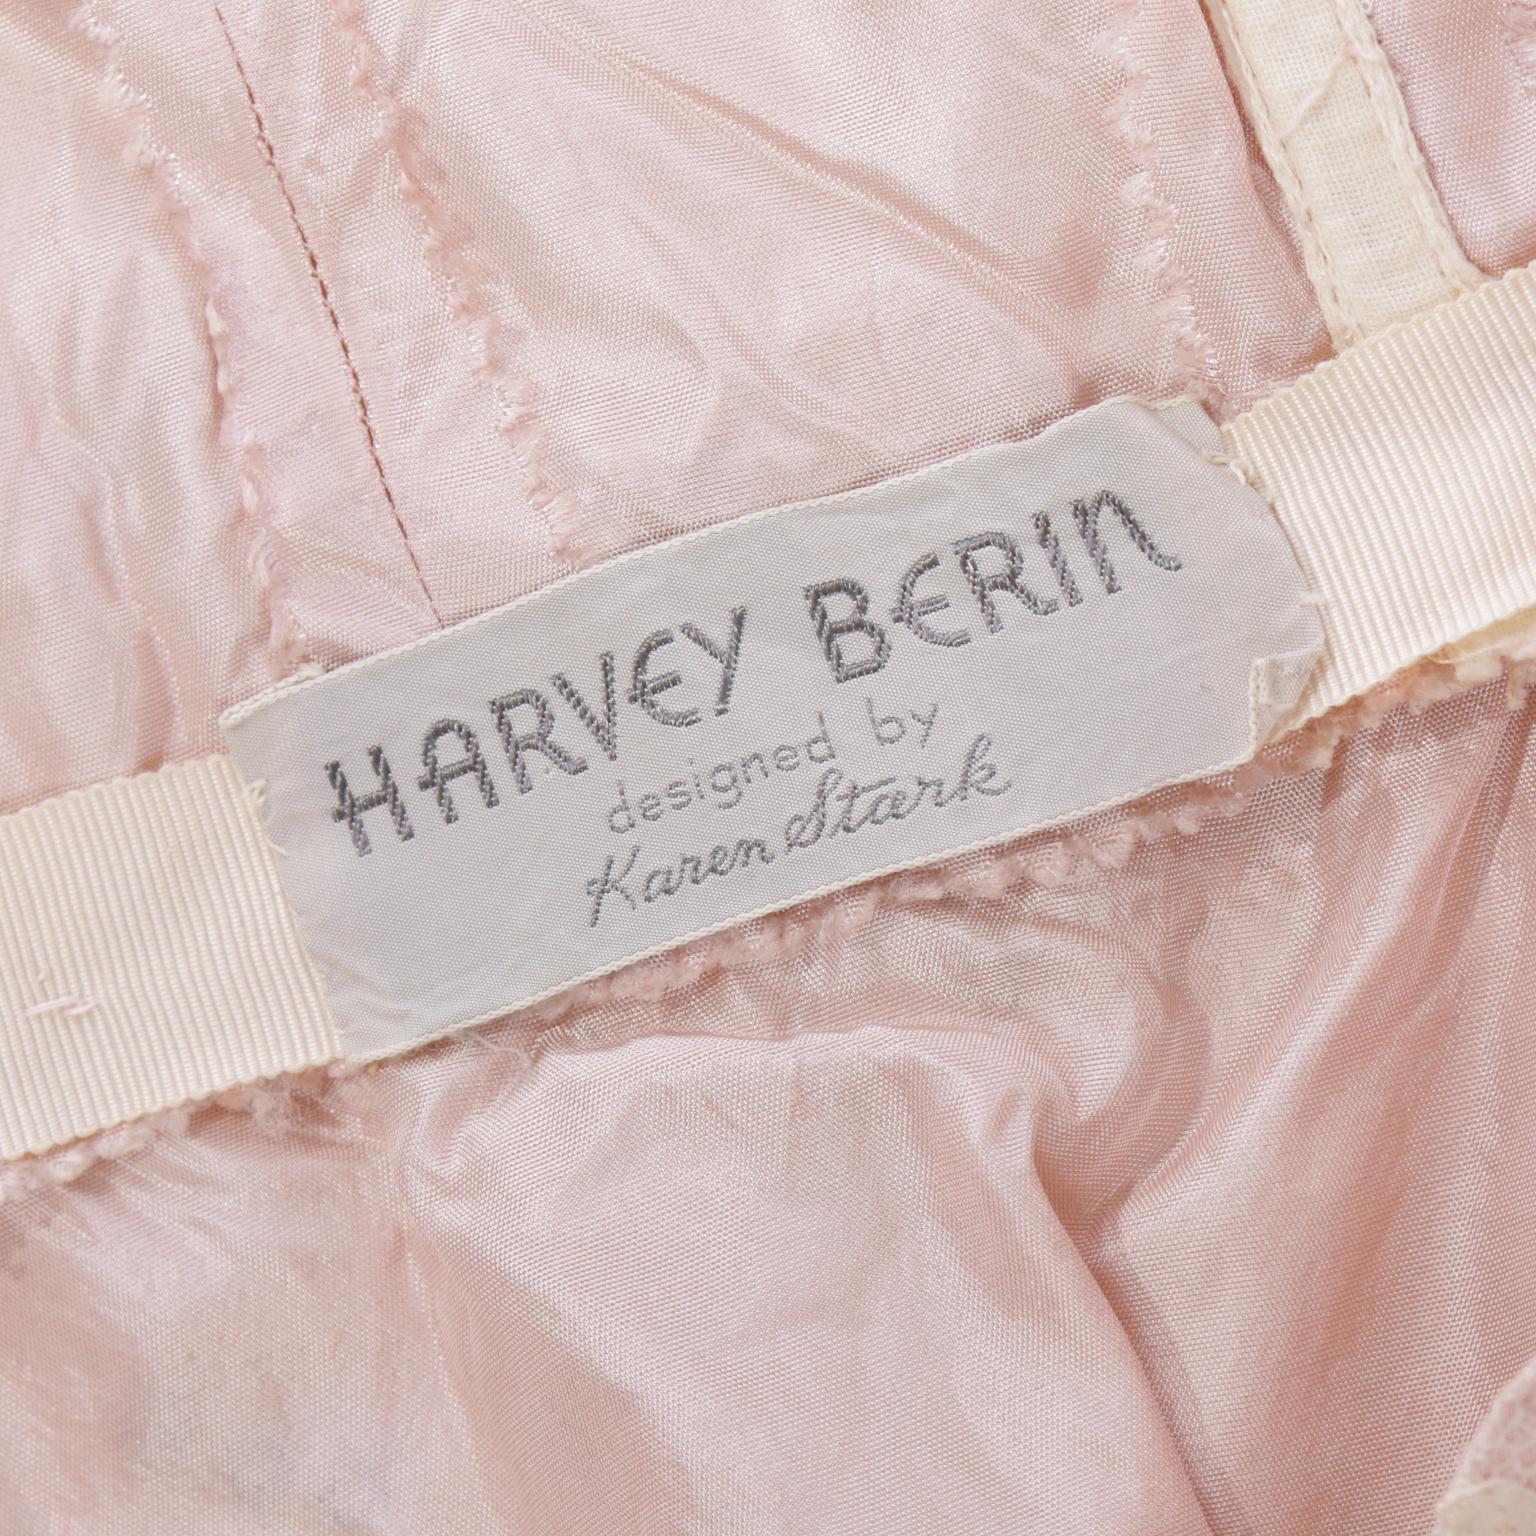 Harvey Berin Karen Stark 1950's Lace Beaded Evening Dress w Sequin & Rhinestones For Sale 7